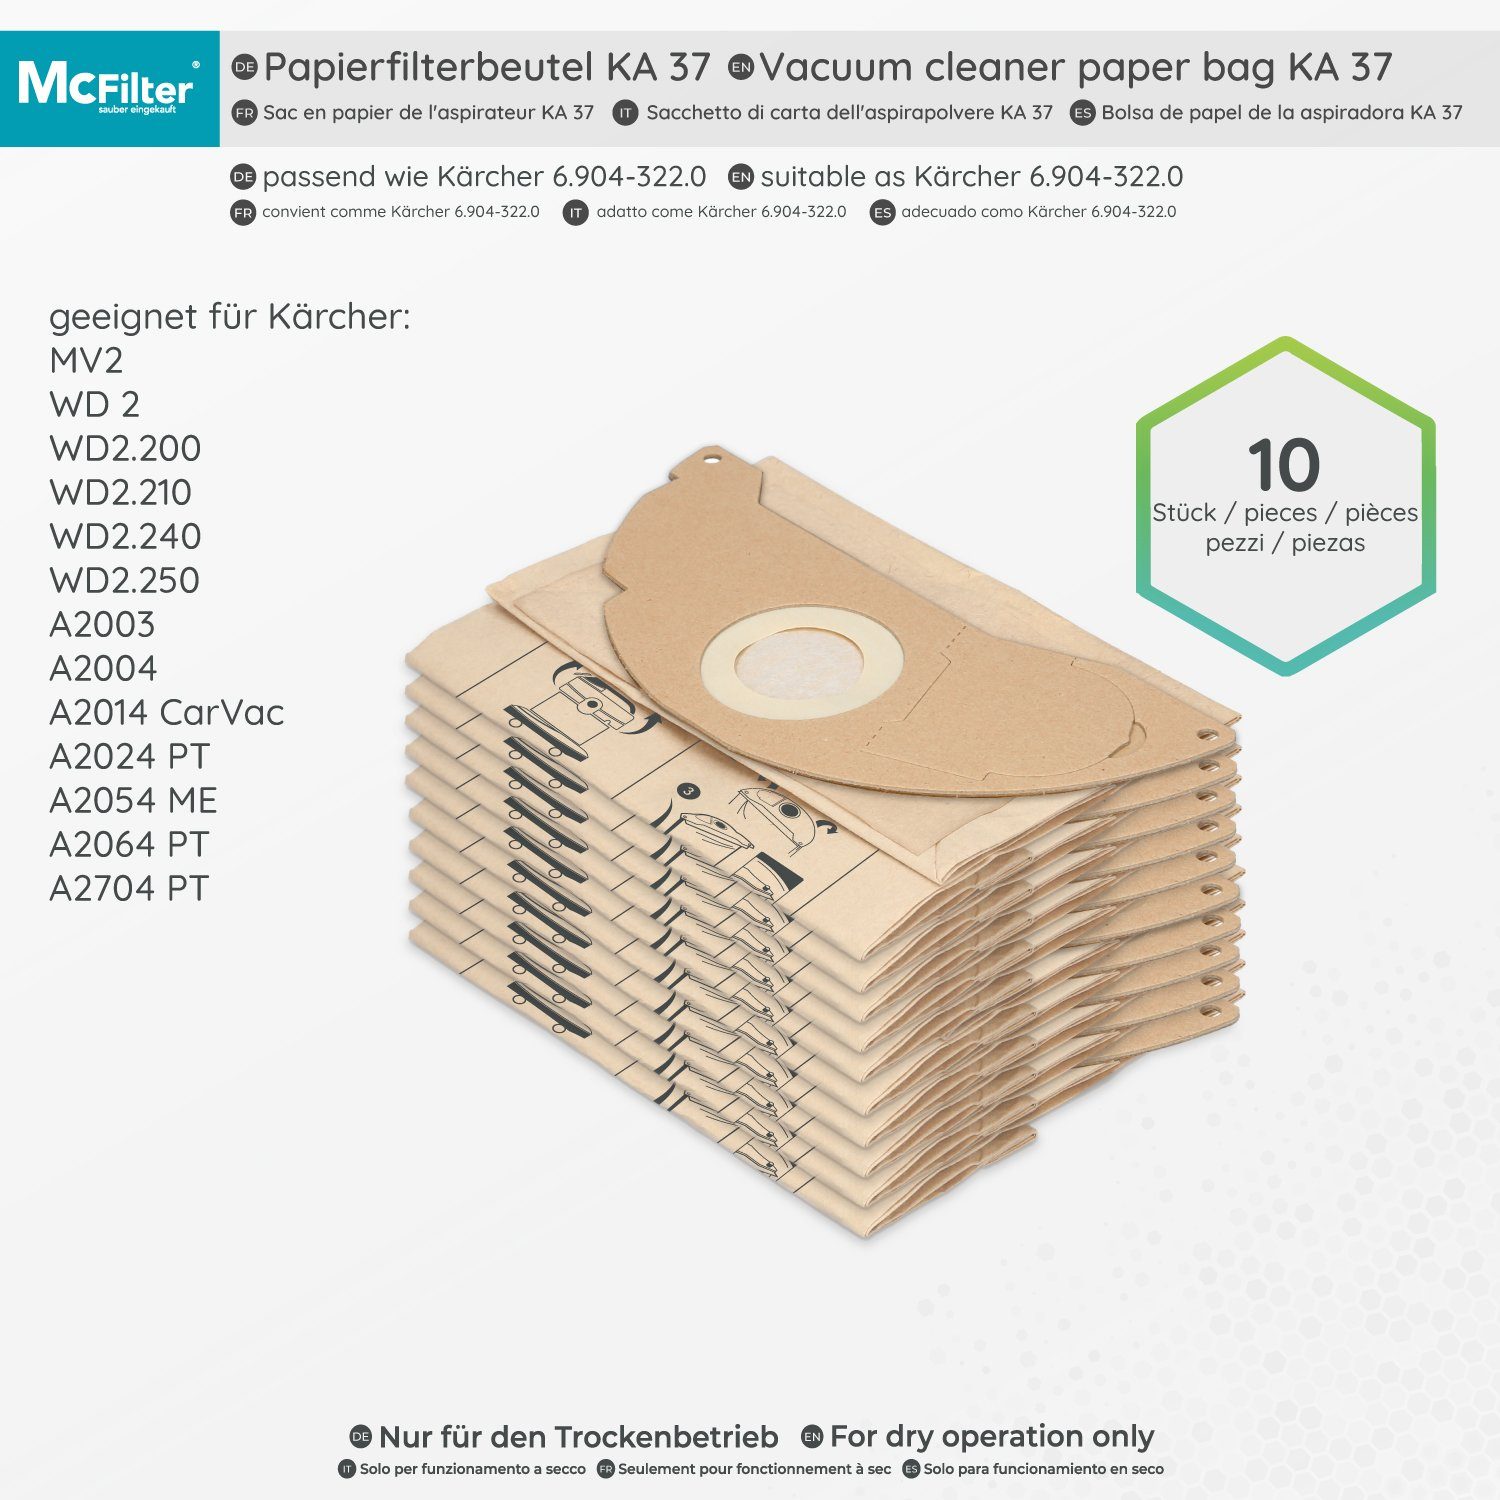 McFilter Staubsaugerbeutel (10 Hohe 2704 A Kärcher A2704 2-lagig 1 Stück) Filter, für Deckscheibe, Formstabile + St., PT, passend Reißfestigkeit, 11